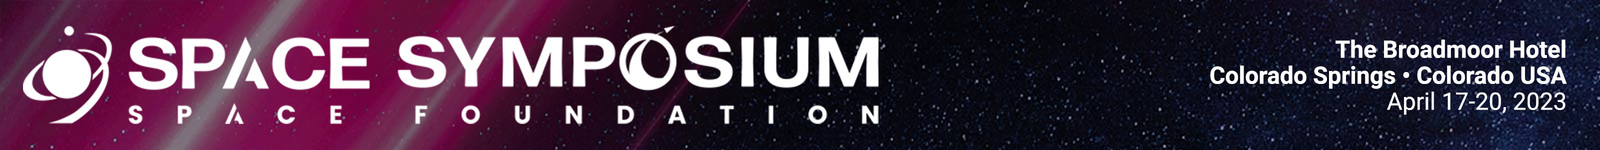 38th Space Symposium logo